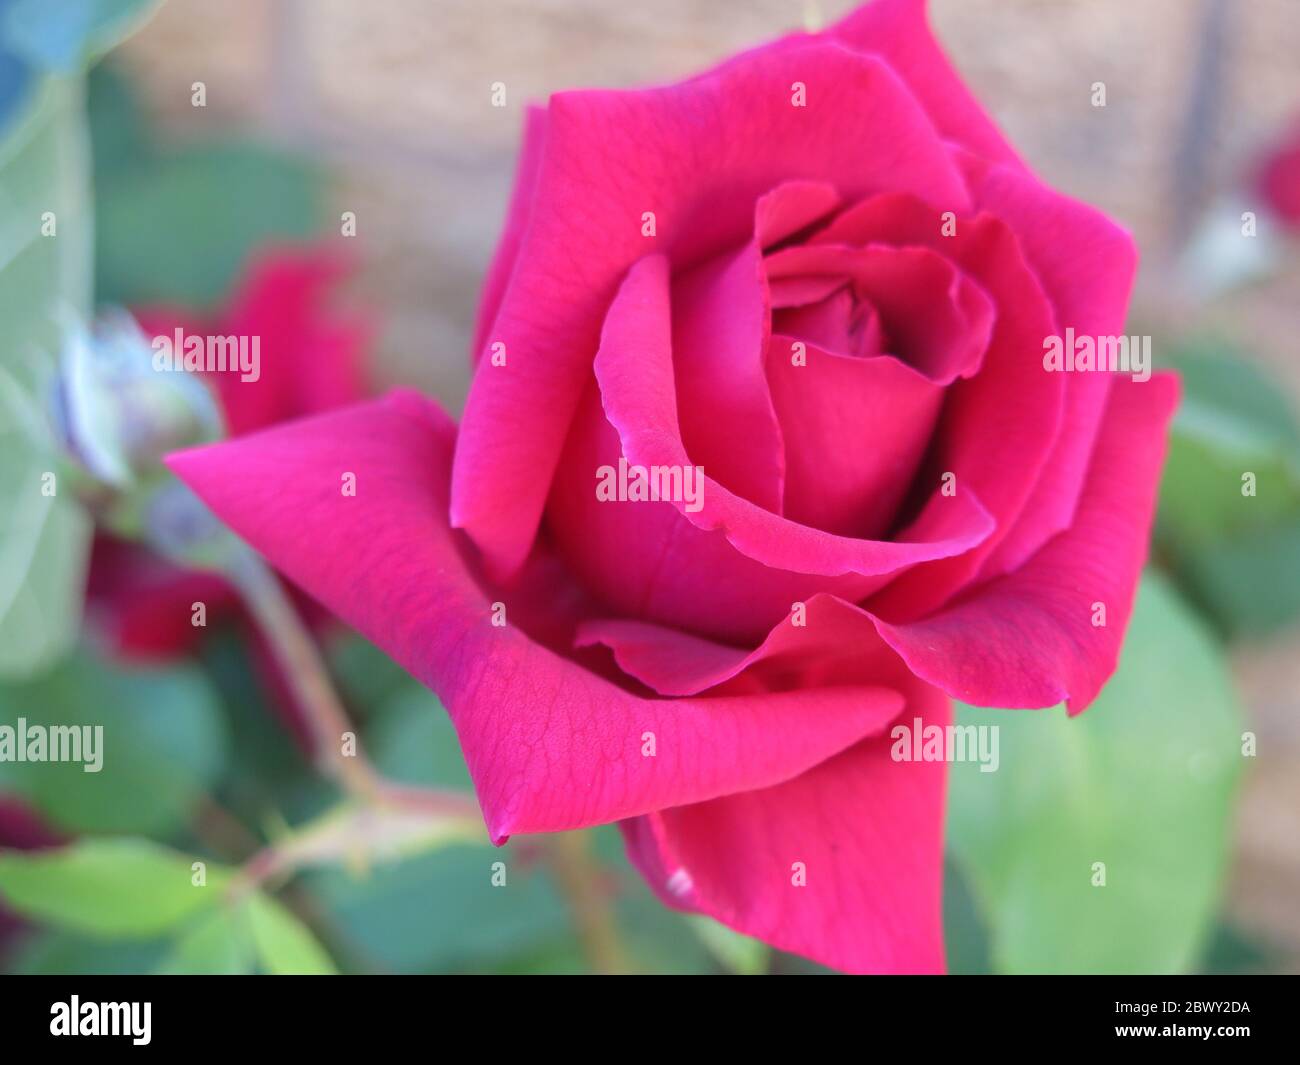 Un bourgeon rose foncé de 'Etoile de Hollande', un grimpeur vigoureux, qui s'ouvre en deux roses rouge cramoisi, parfumées. Banque D'Images